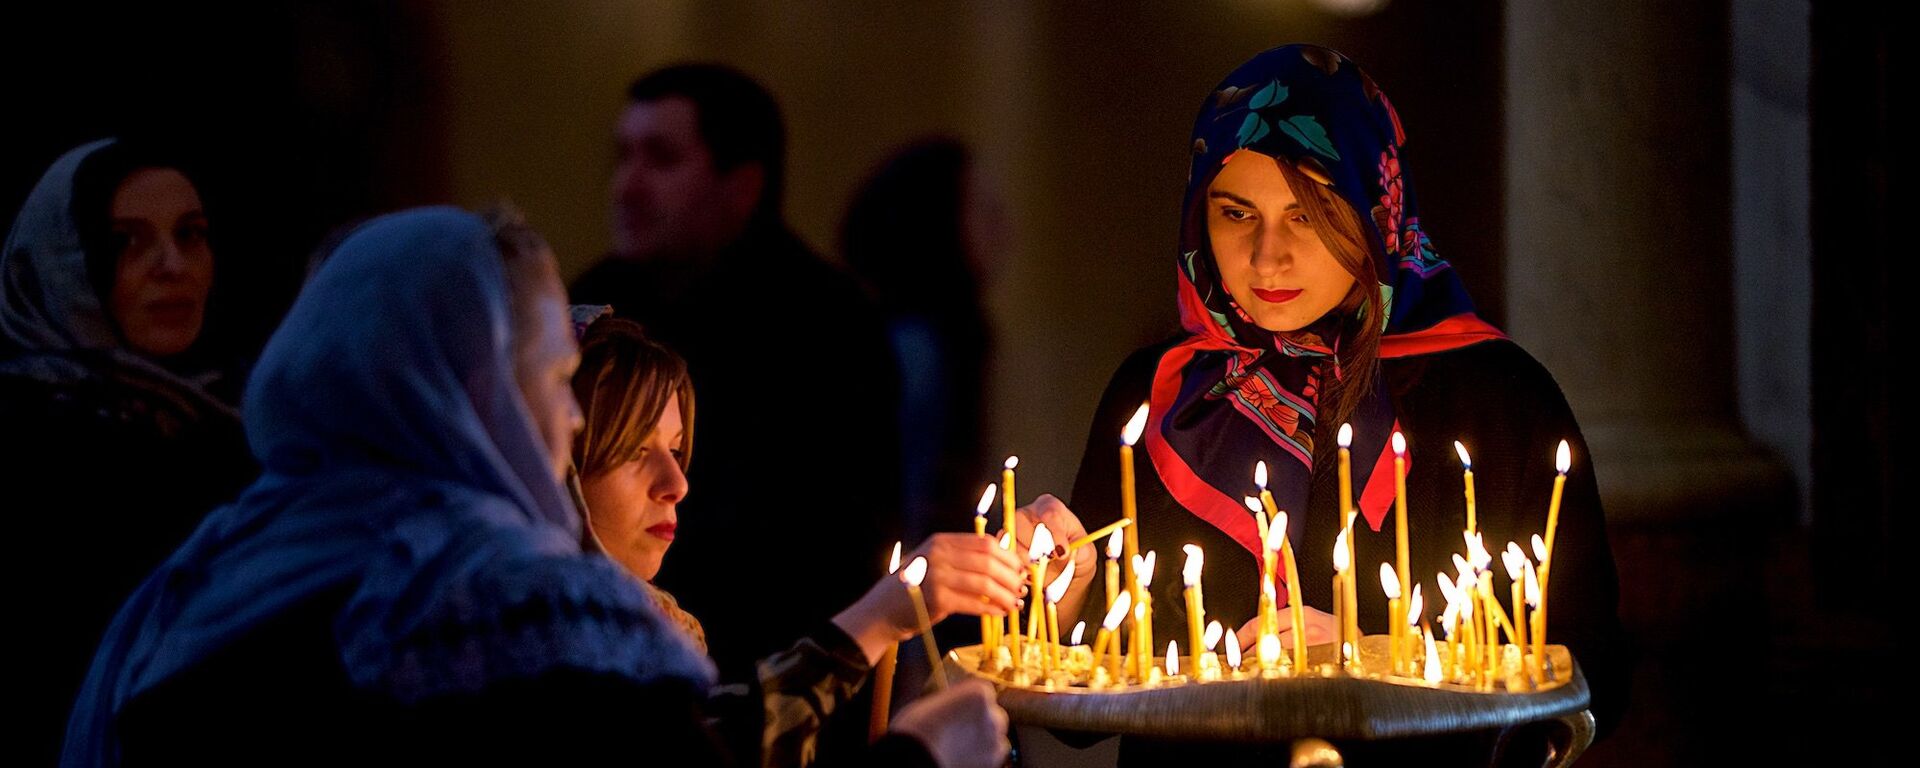 Верующие ставят свечки в церкви перед иконой Богородицы - Sputnik Грузия, 1920, 07.10.2018